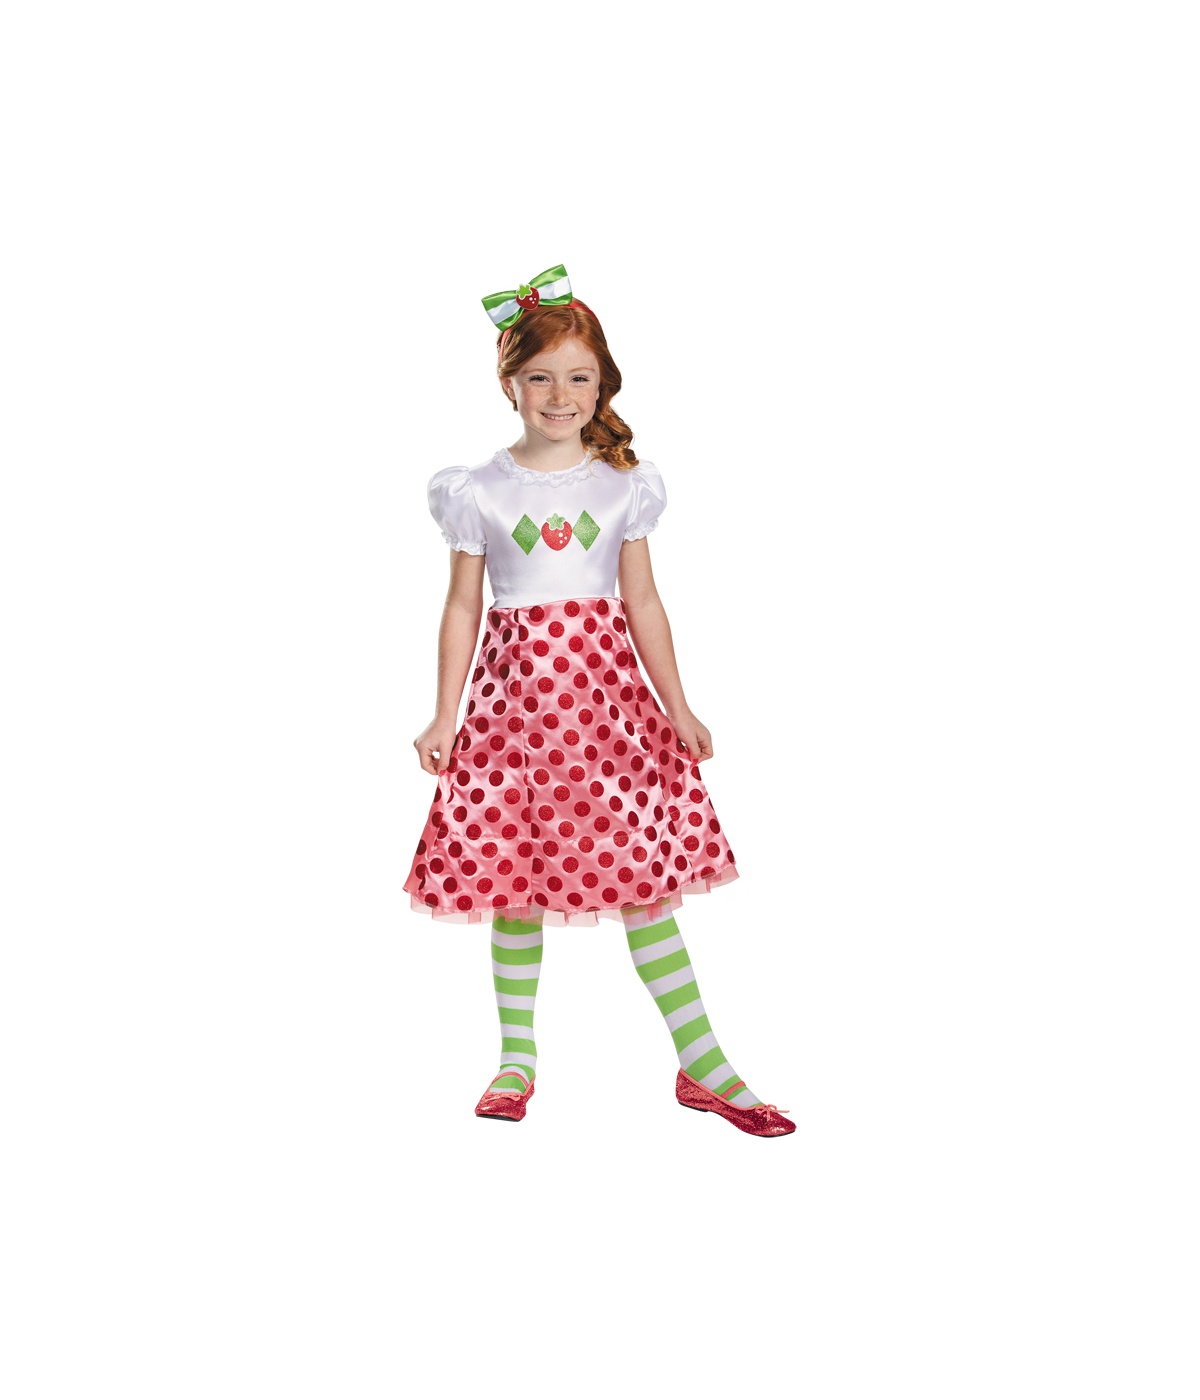 Strawberry Shortcake Baby Girl Classic Costume